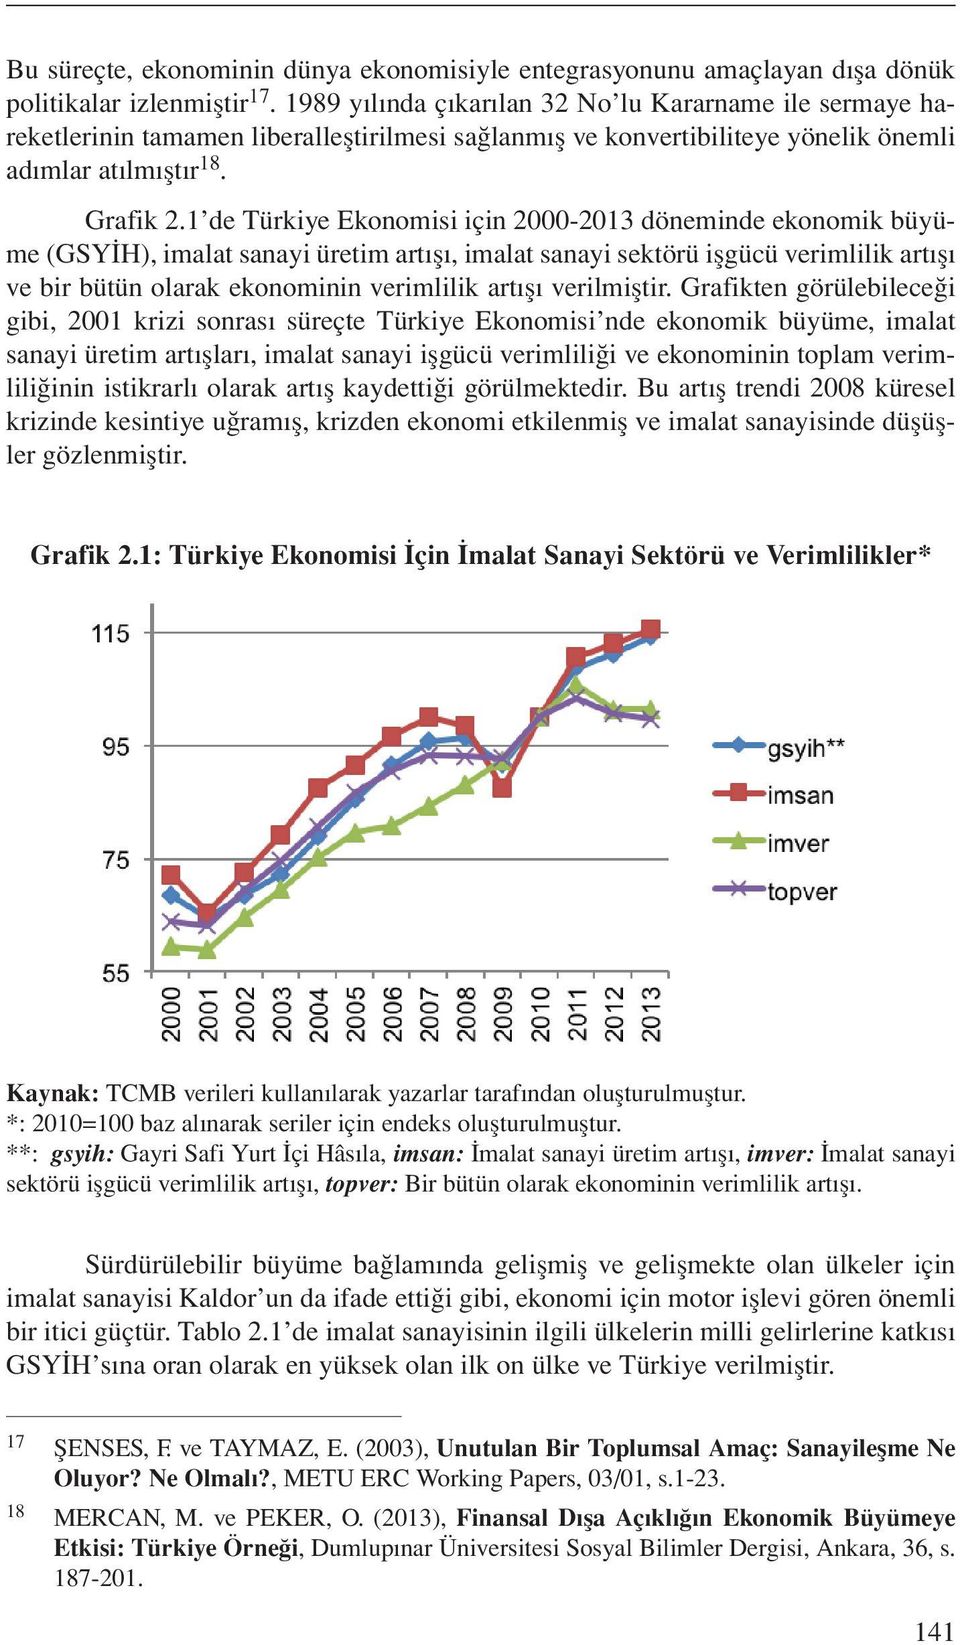 1 de Türkiye Ekonomisi için 2000-2013 döneminde ekonomik büyüme (GSYİH, imalat sanayi üretim artışı, imalat sanayi sektörü işgücü verimlilik artışı ve bir bütün olarak ekonominin verimlilik artışı